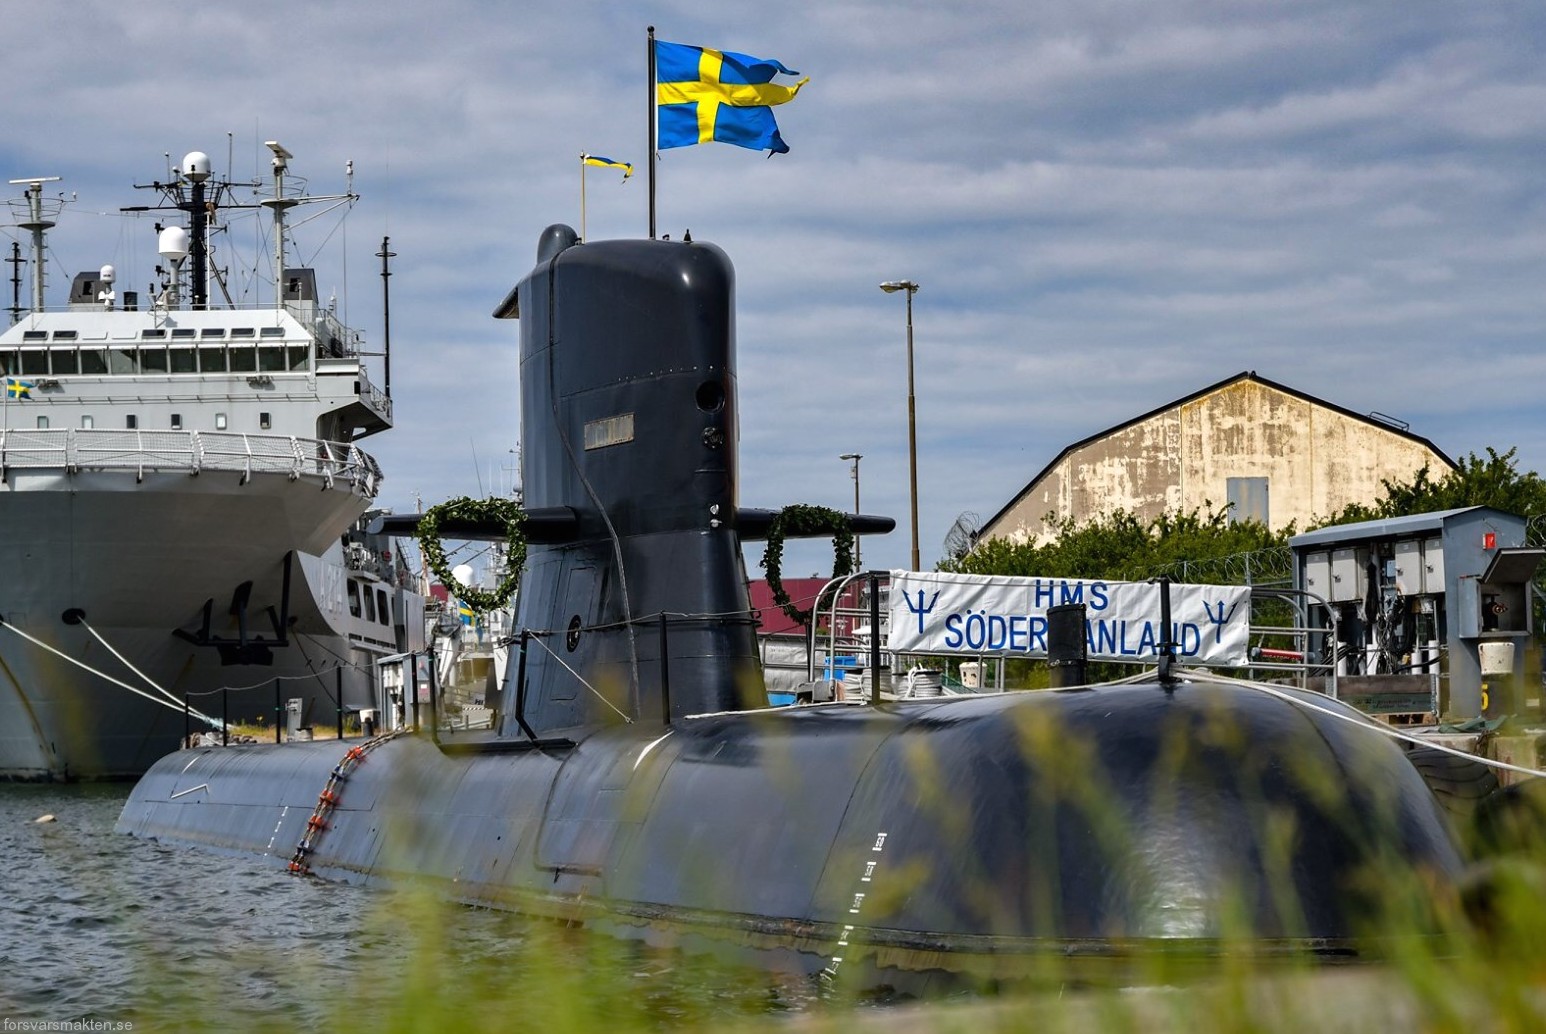 hswms hms sodermanland söd a17 vastergotland class submarine ssk swedish navy svenska marinen försvarsmakten kockums 15